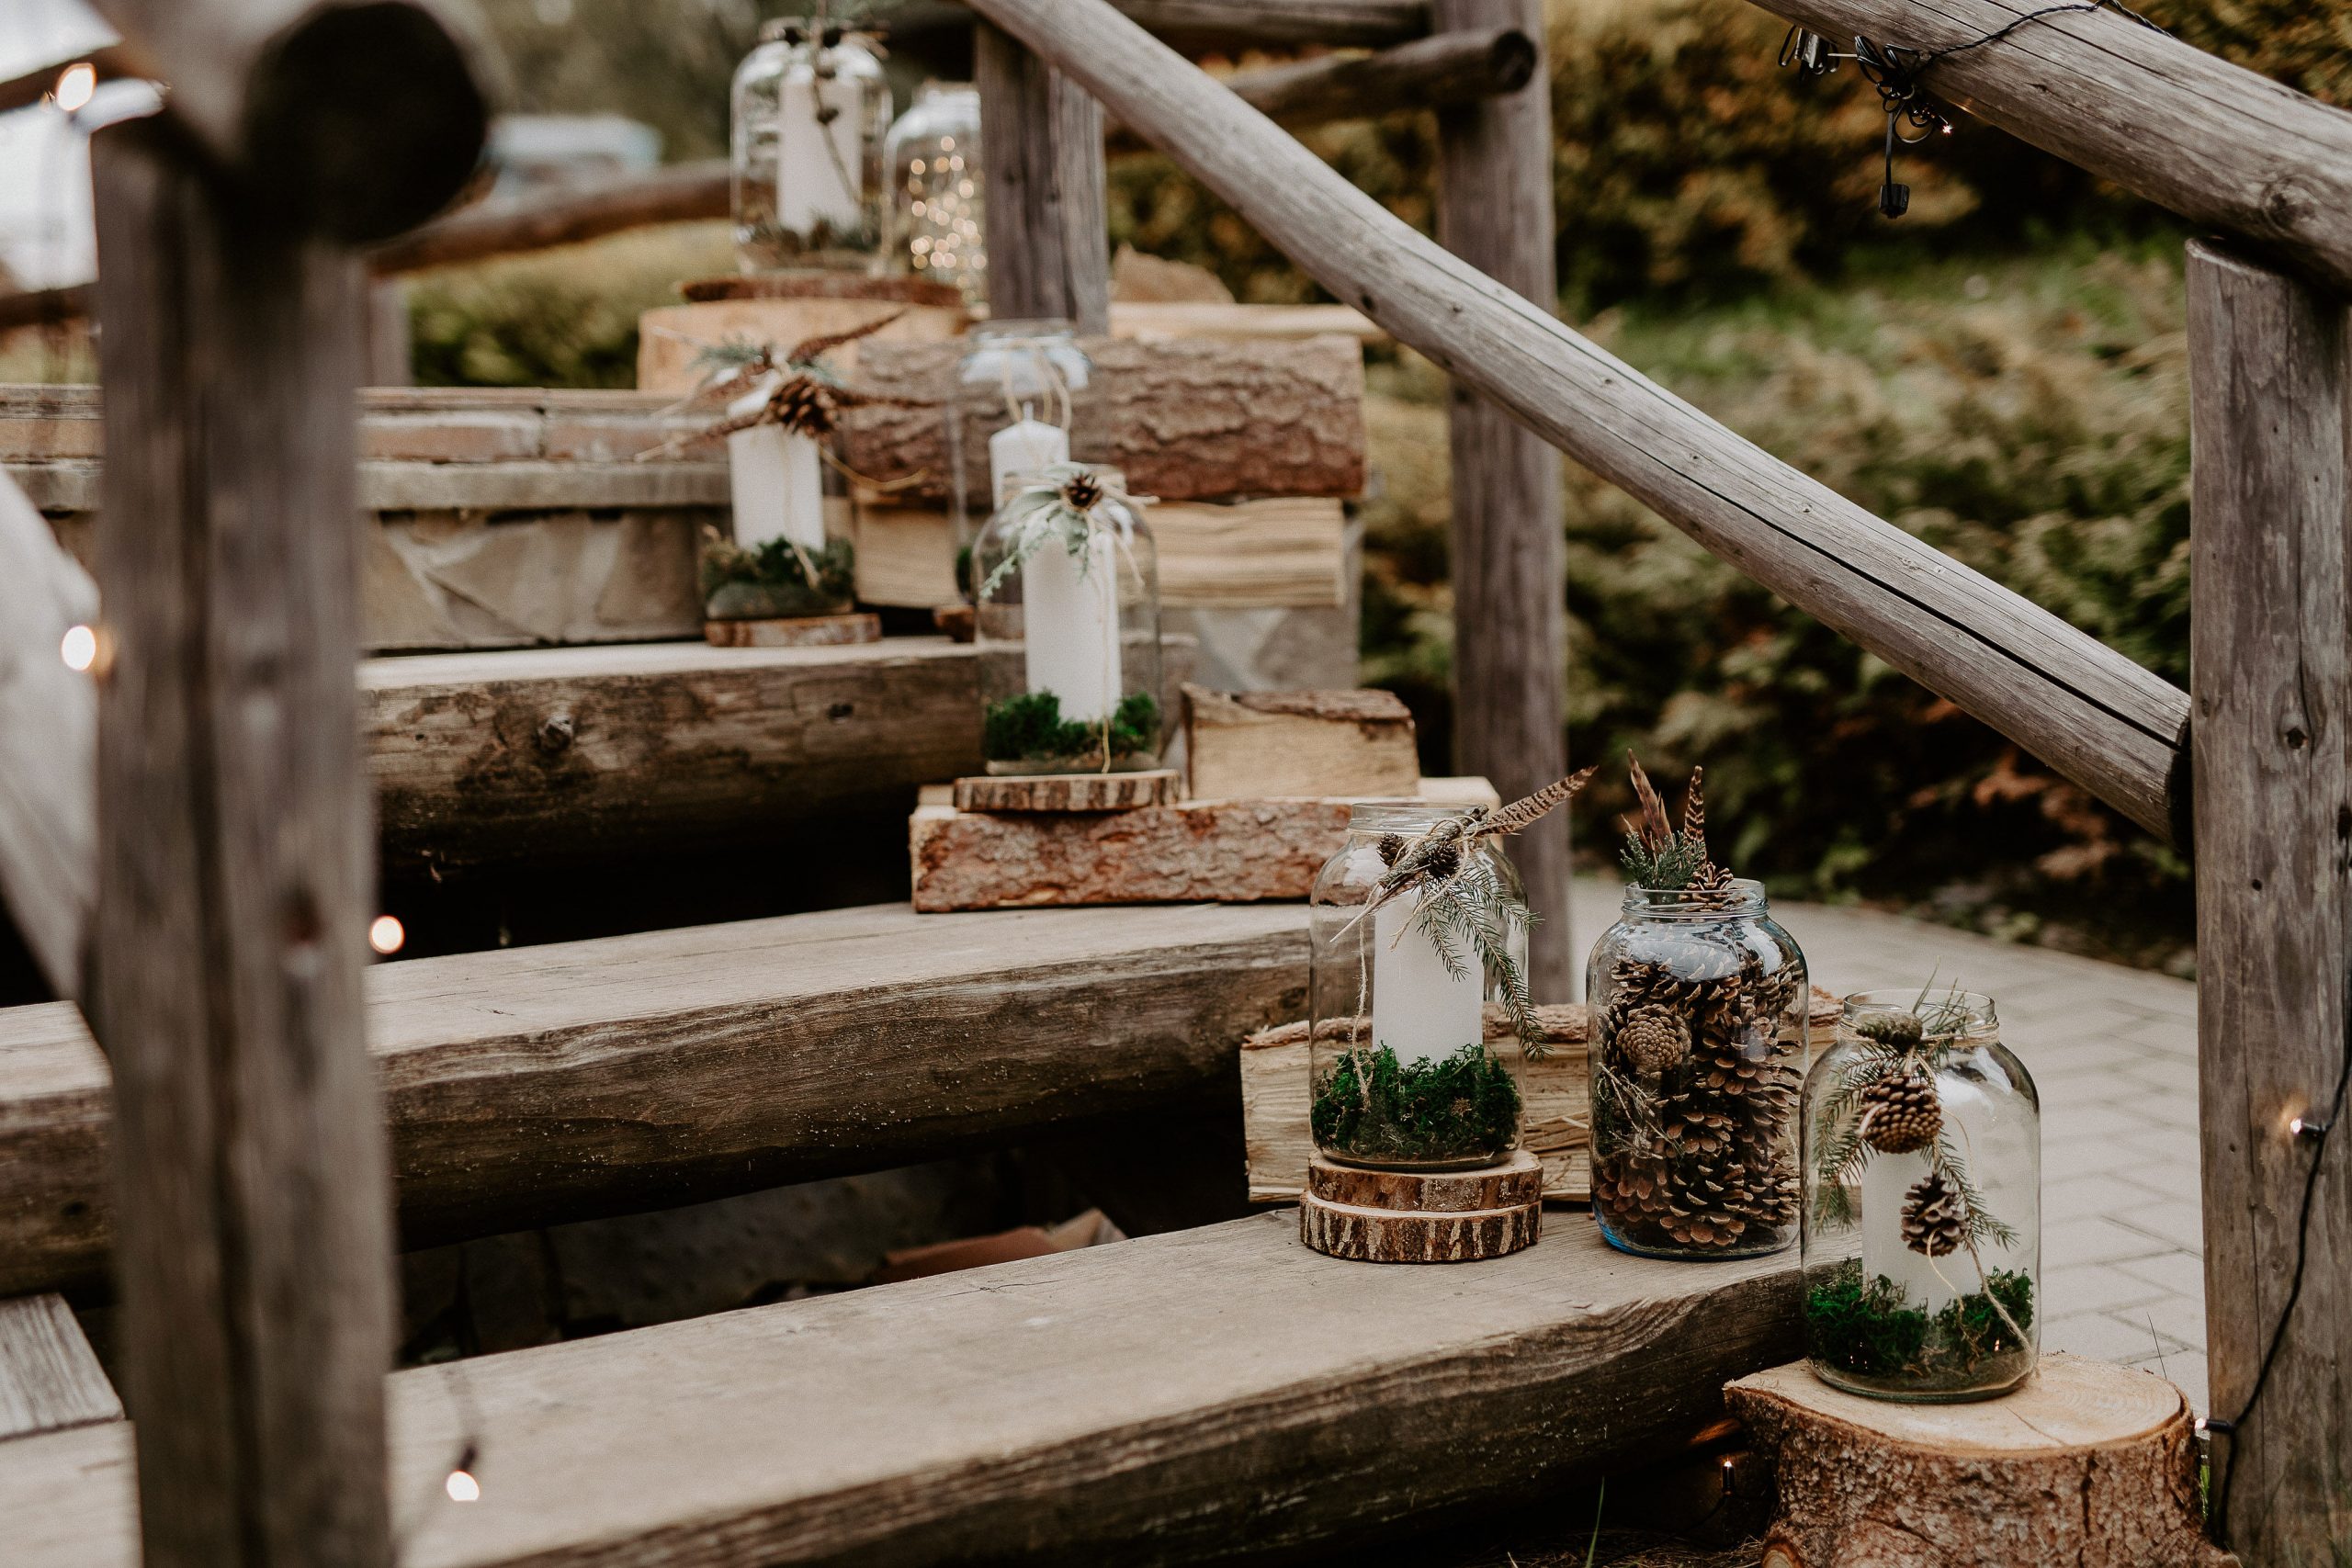 Susan&Sis decor – rozpravkova lesna svadba – blog o prirodnej svadbe – svadba MEMO photo agency – Eri a Matt – nahe prestieranie stola, ihlicie a sisky